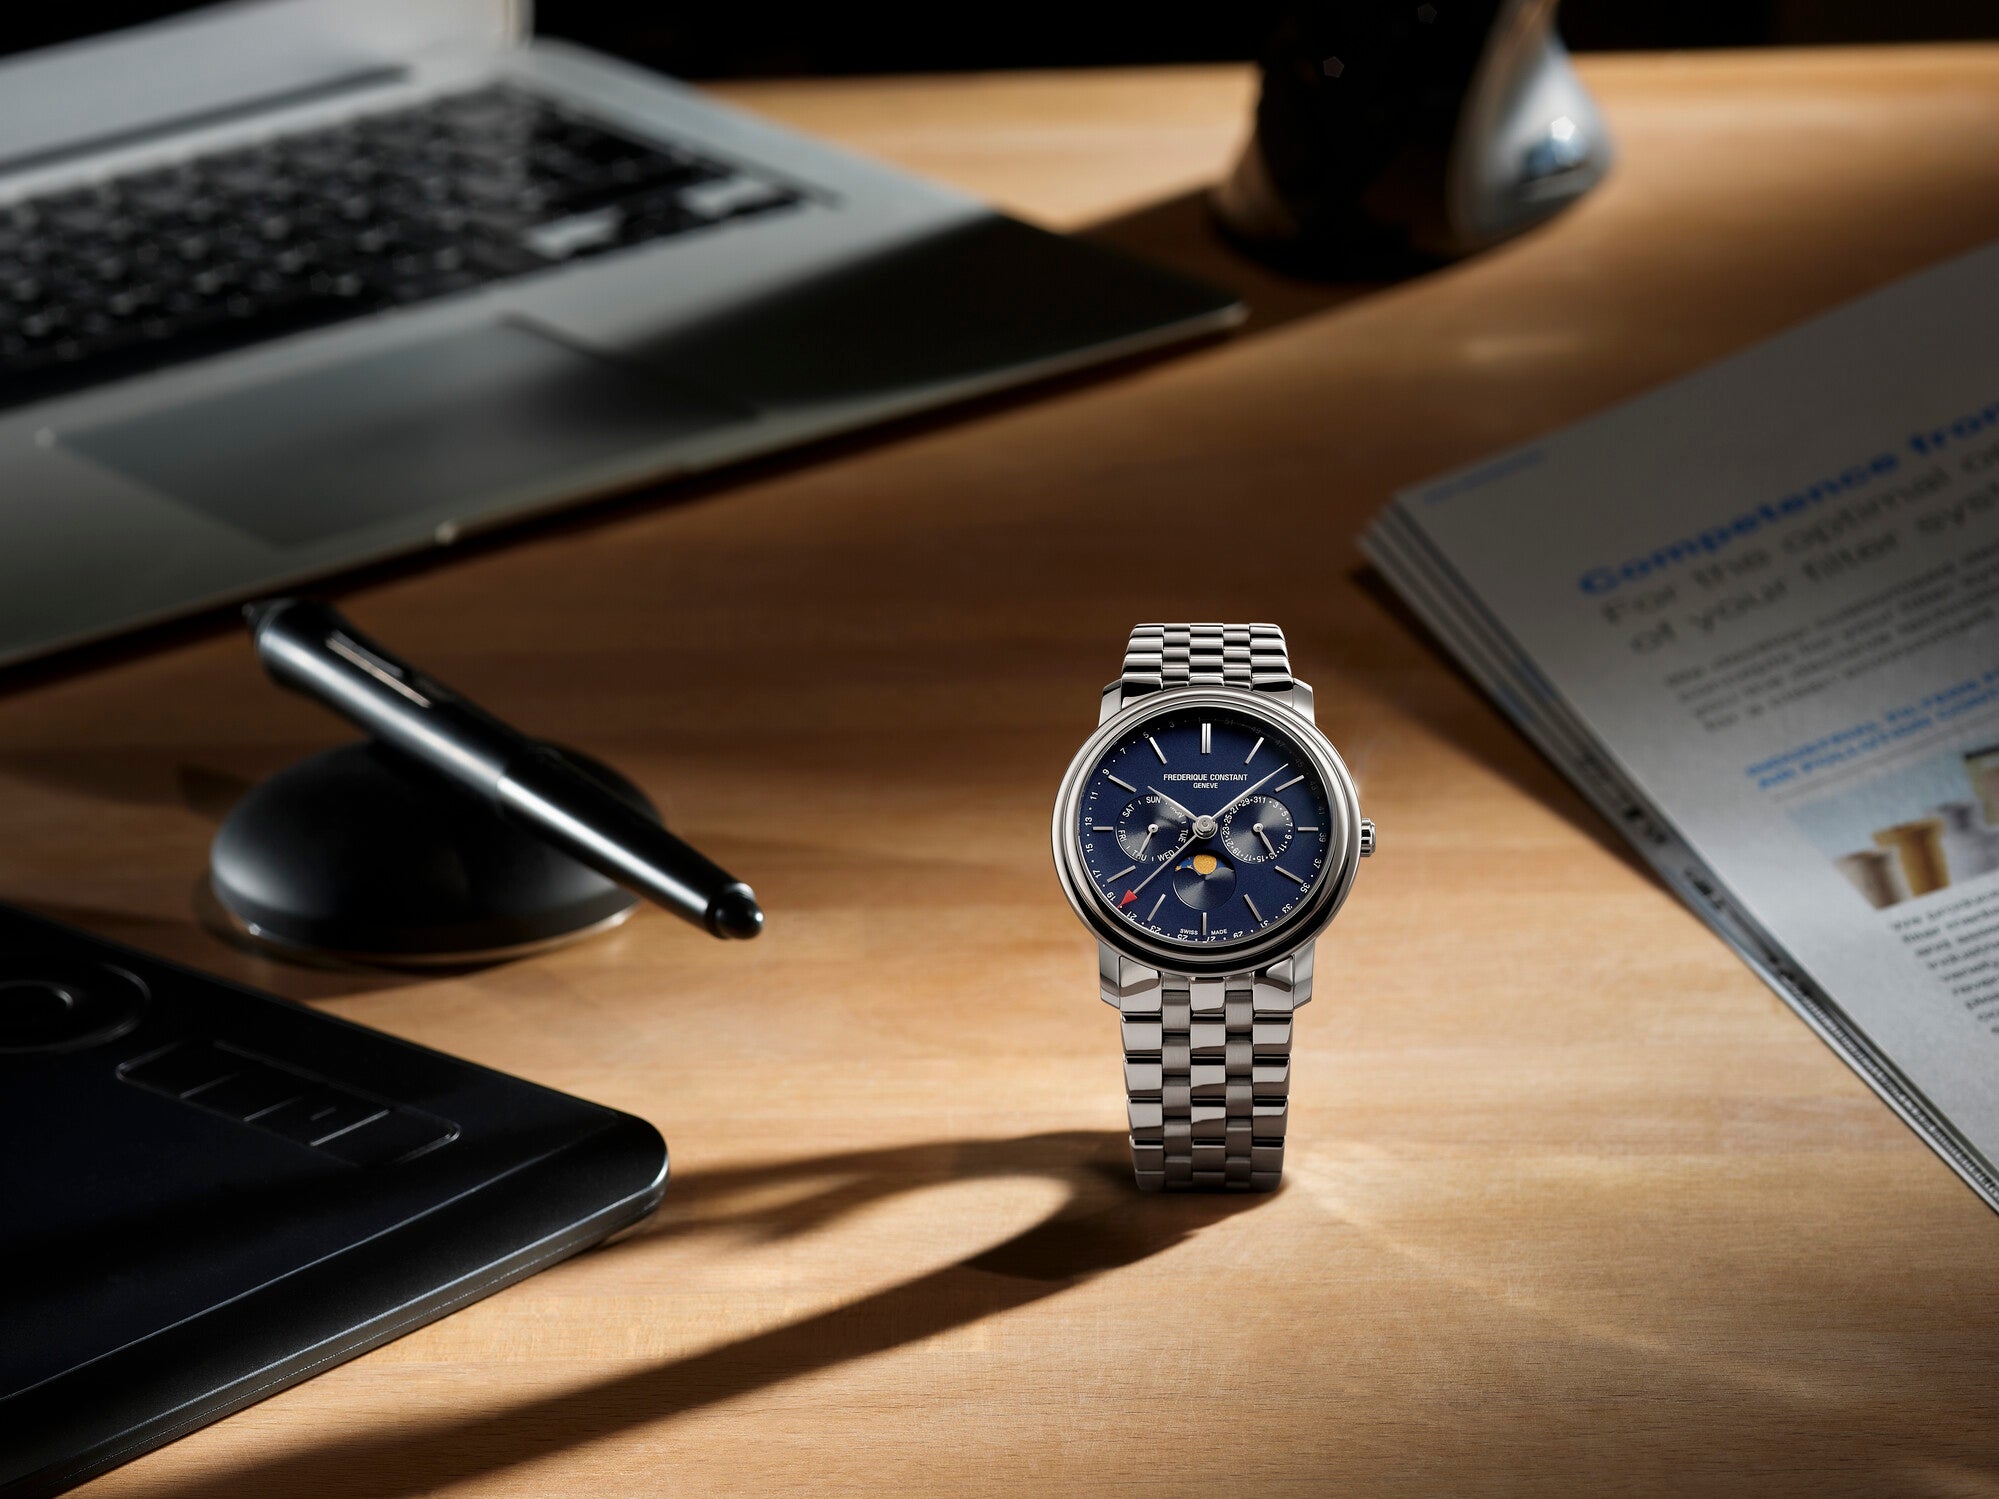 Frederique Constant Uhren Mondanzeige Wochentagsanzeige Datumsanzeige Silber Gehäuse Silber Armband Blau Zifferblatt Oberturm Uhren in Aarau